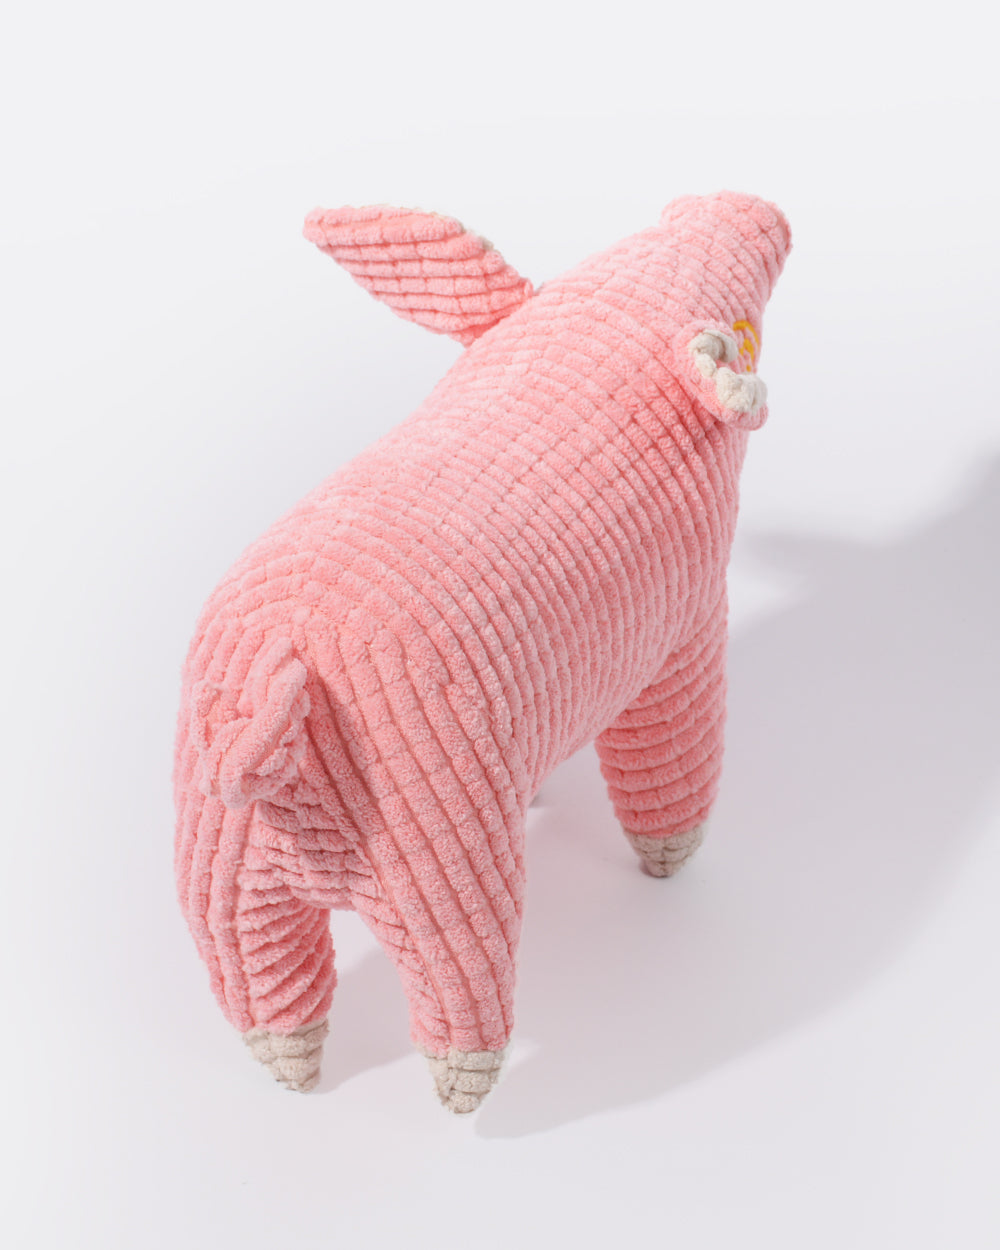 Plush Squeaky Dog Toy - Pink Pig